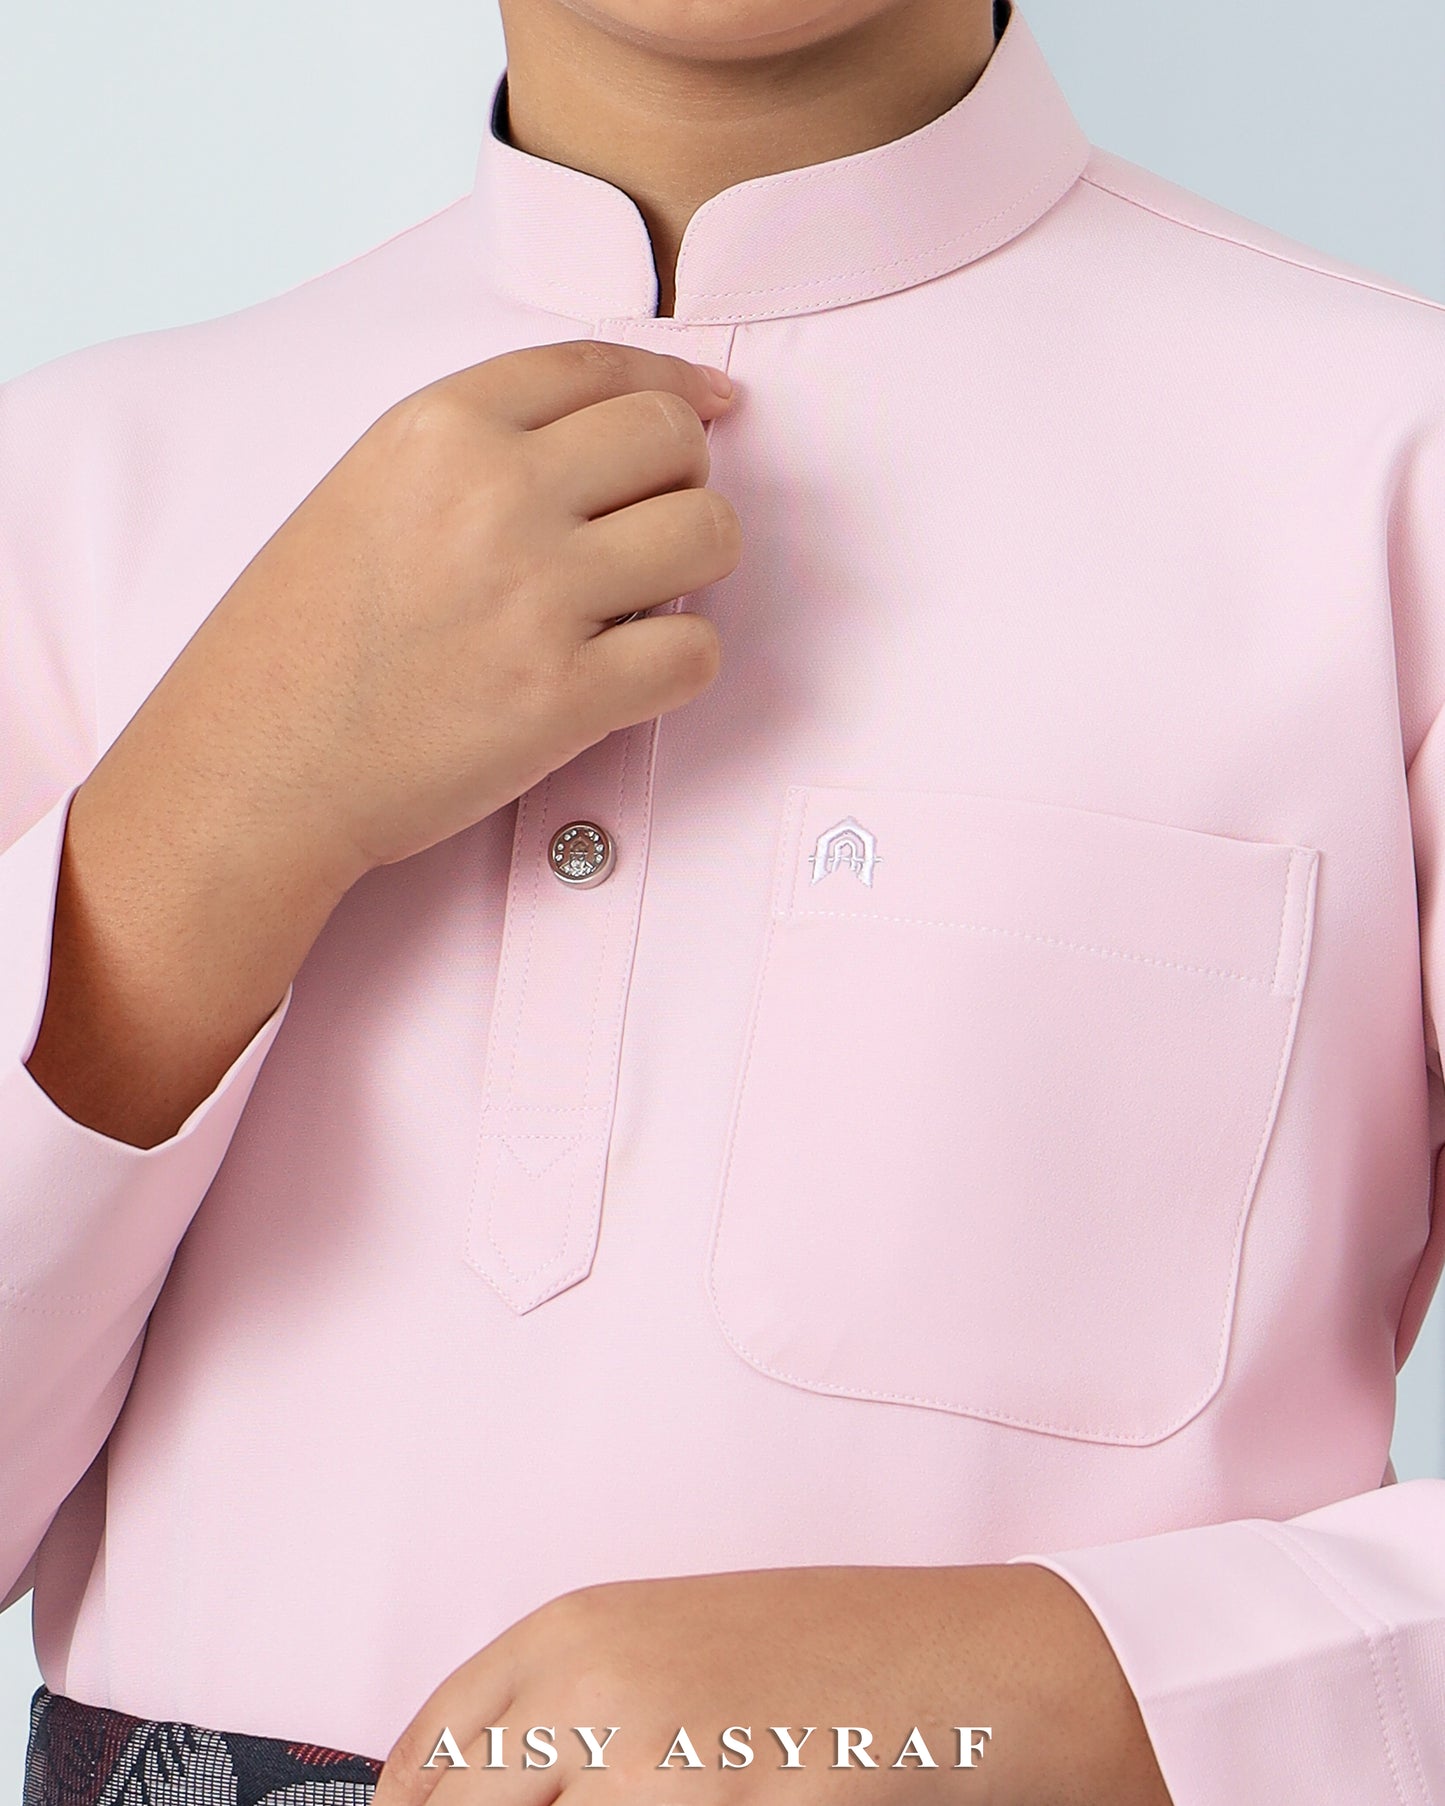 Baju Melayu Haseki Kids - Pastel Pink